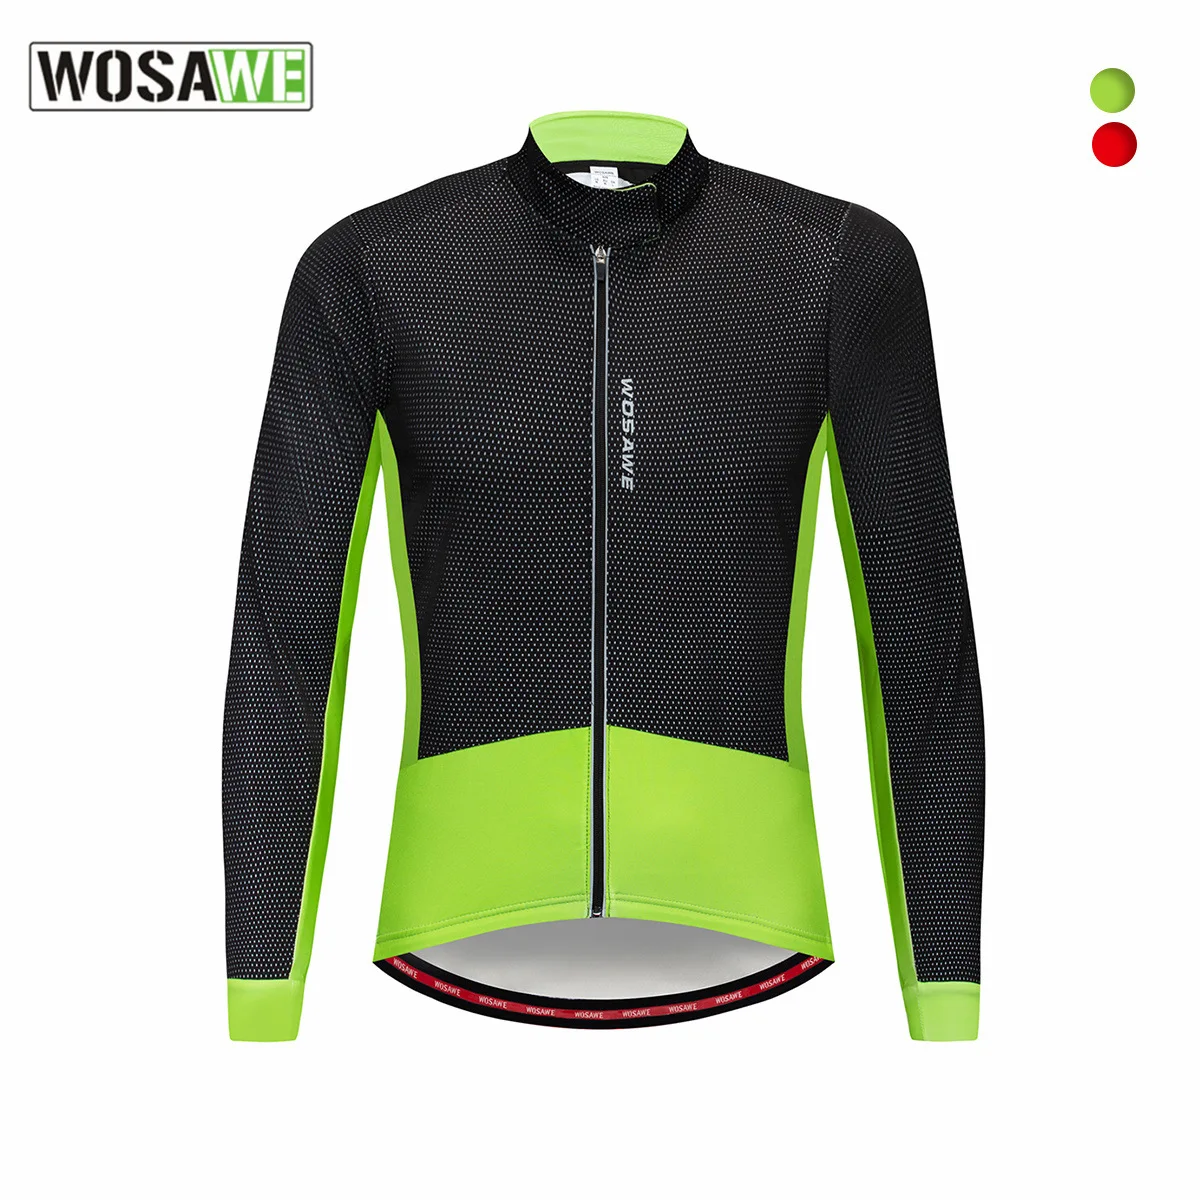 WOSAWE Bisiklet Ceket Uzun Kollu Rüzgarlık Sürme Rüzgar Geçirmez Giyim Polar Sıcak Koşu Yürüyüş BC286